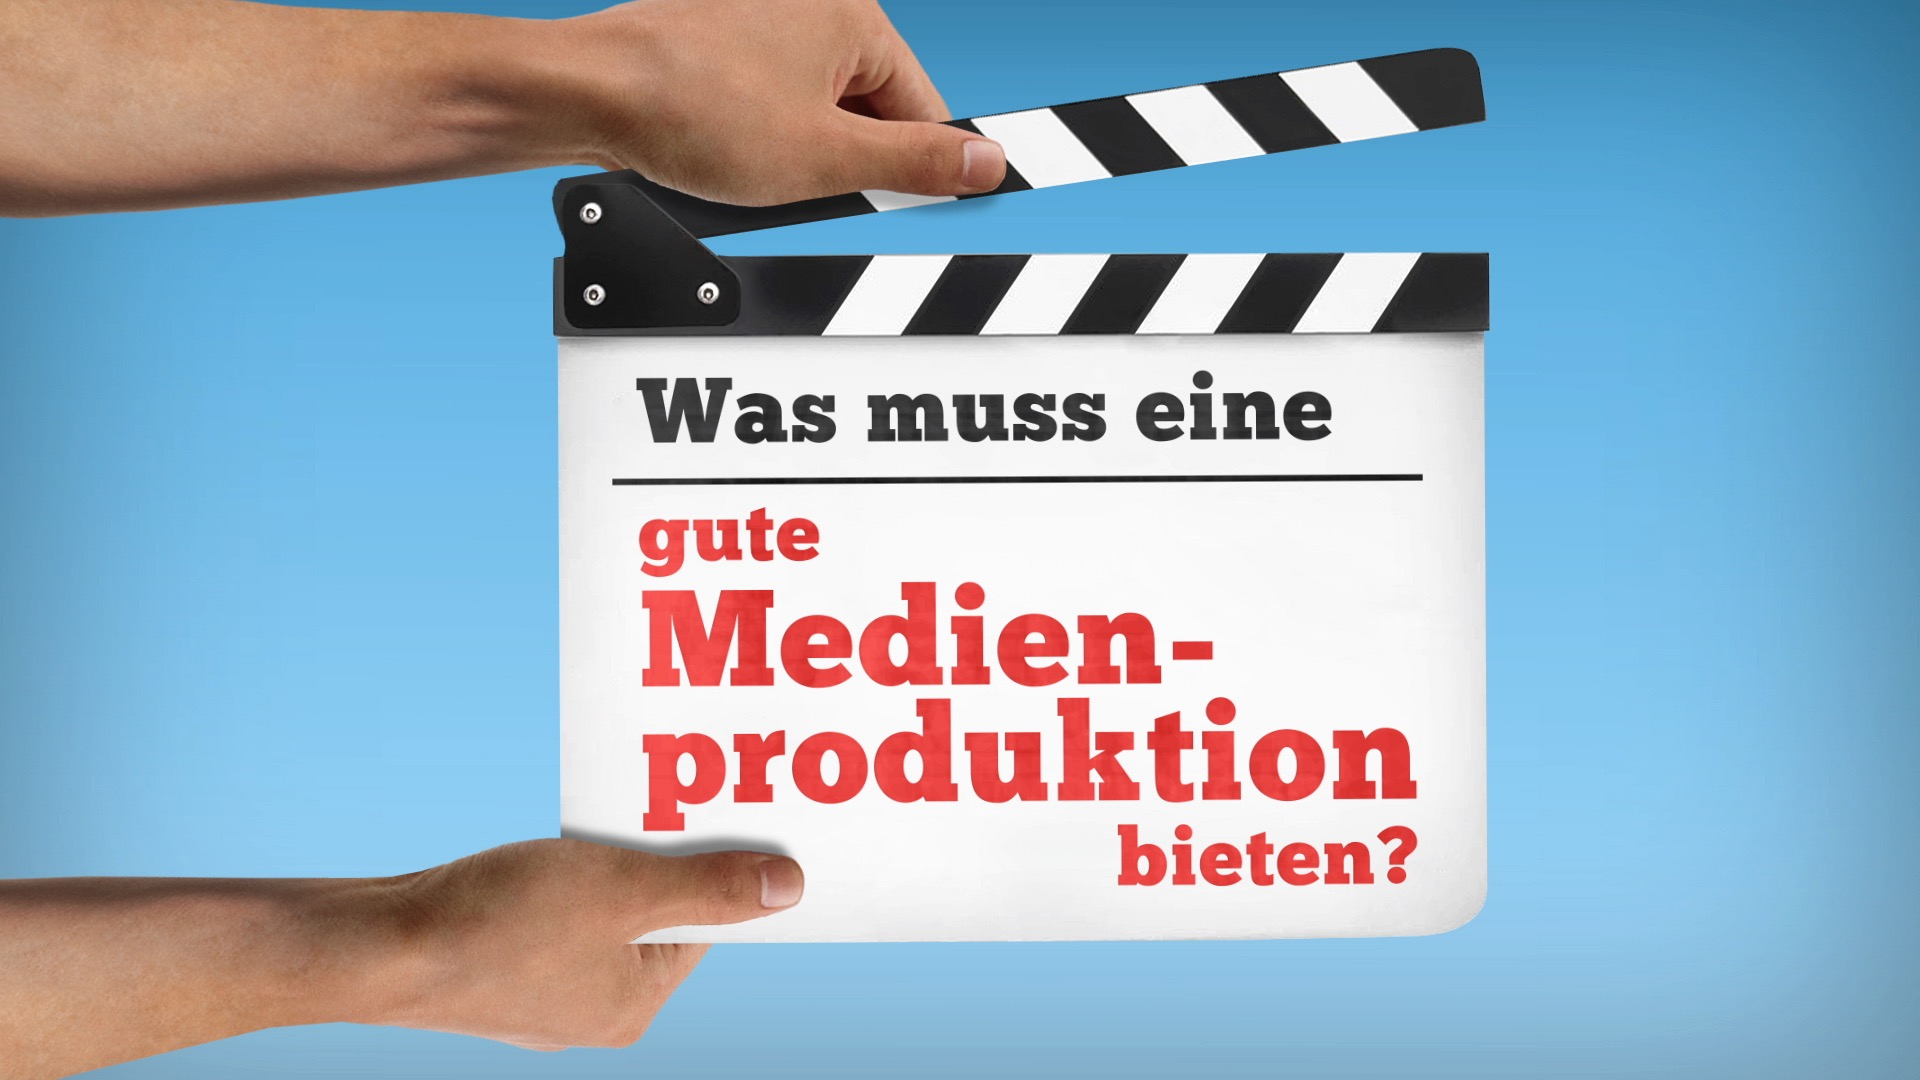 Video-Thumbnail von Präsentationsfilm: Zwei Hände halten Filmklappe ins Bild, Aufschrift: "Was muss eine gute Medienproduktion bieten?"